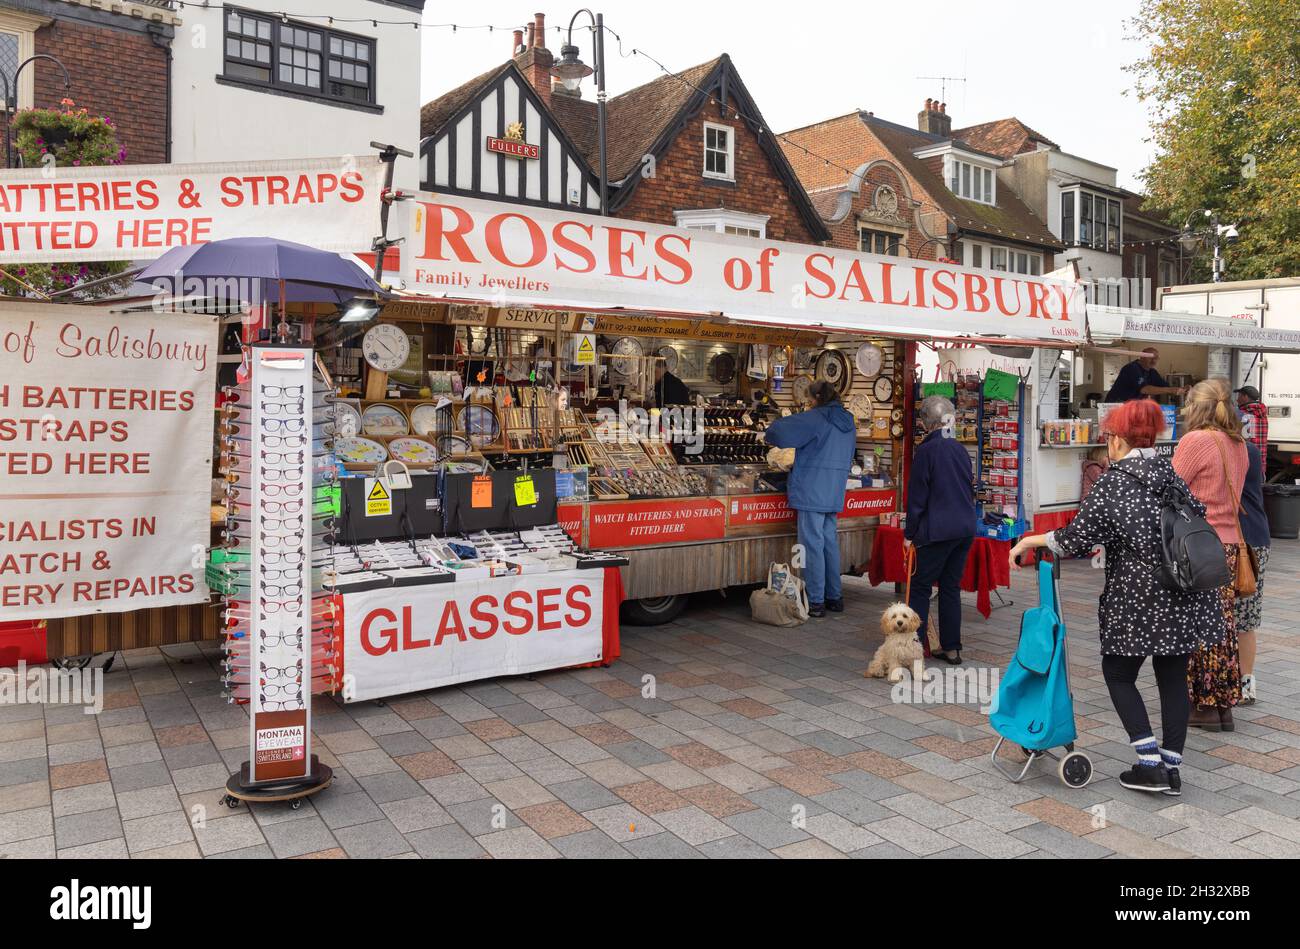 Markt Großbritannien; Leute, die am Roses of Salisbury Hardware Market  Stall, Salisbury Market, Salisbury Market Place Salisbury Wiltshire UK  einkaufen Stockfotografie - Alamy